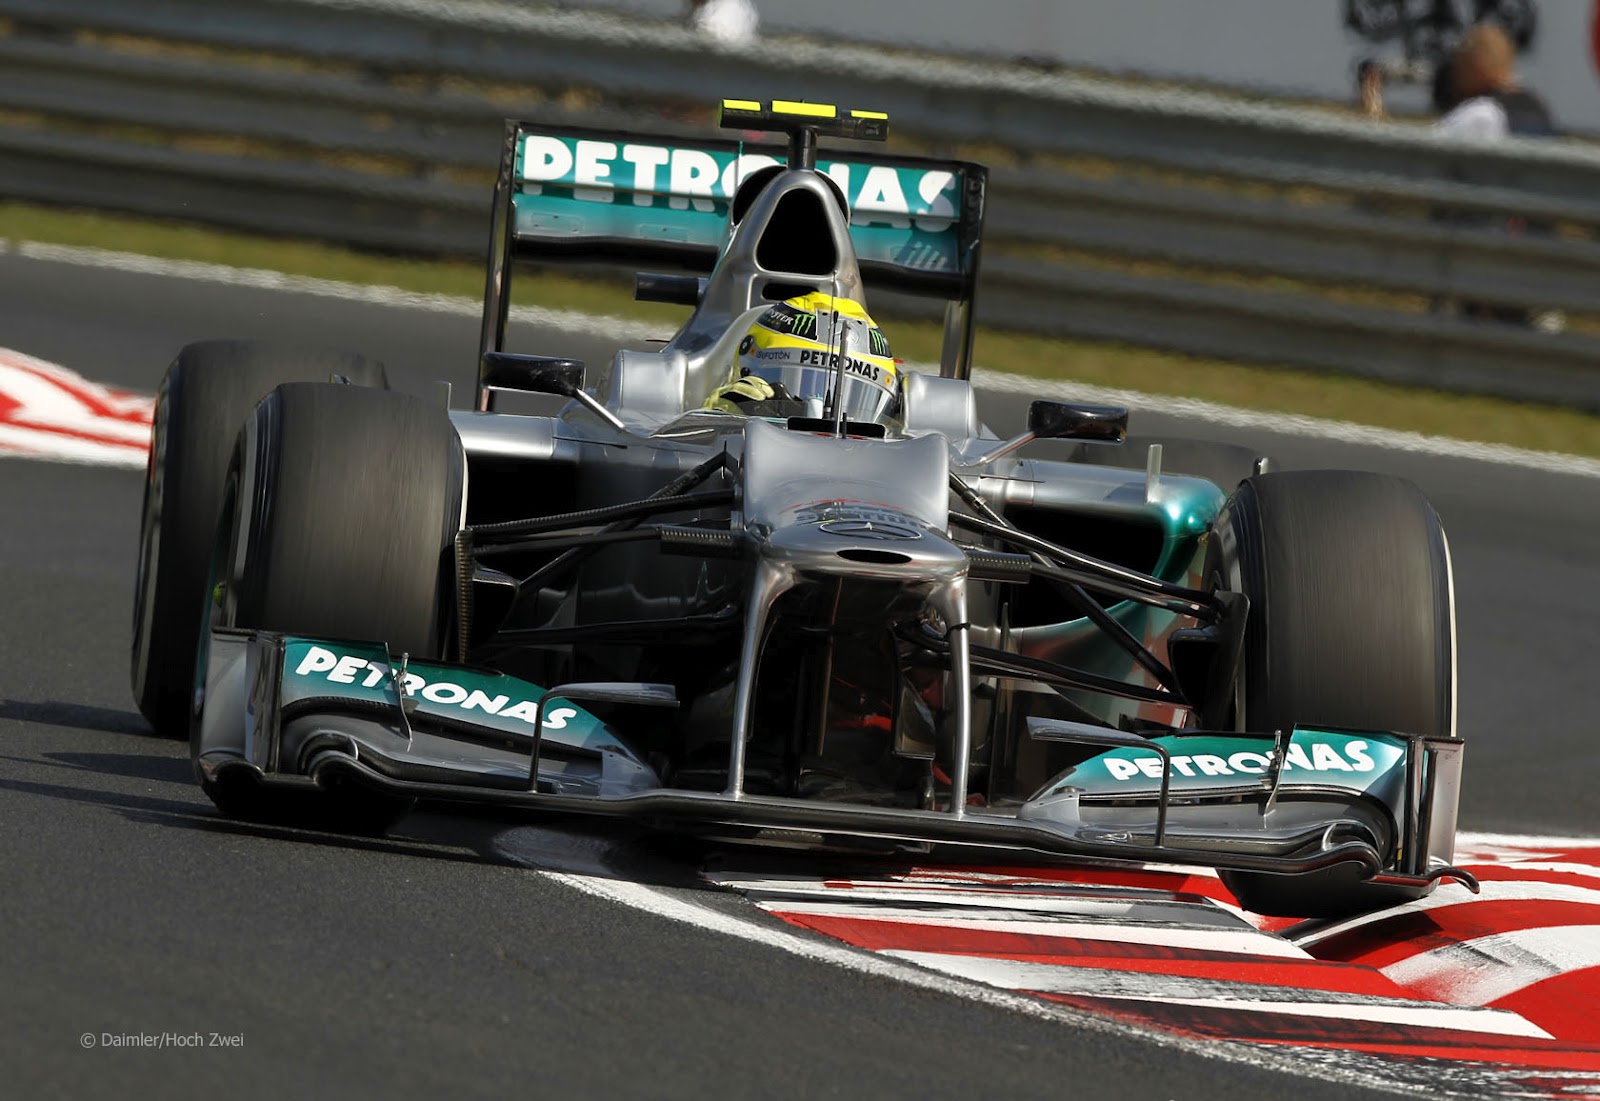 http://3.bp.blogspot.com/-ACS78zzbAsw/UBNHIRATe8I/AAAAAAAAB8Y/uozrmogmEgY/s1600/Mercedes+Rosberg+Hungary+2012-2.jpg